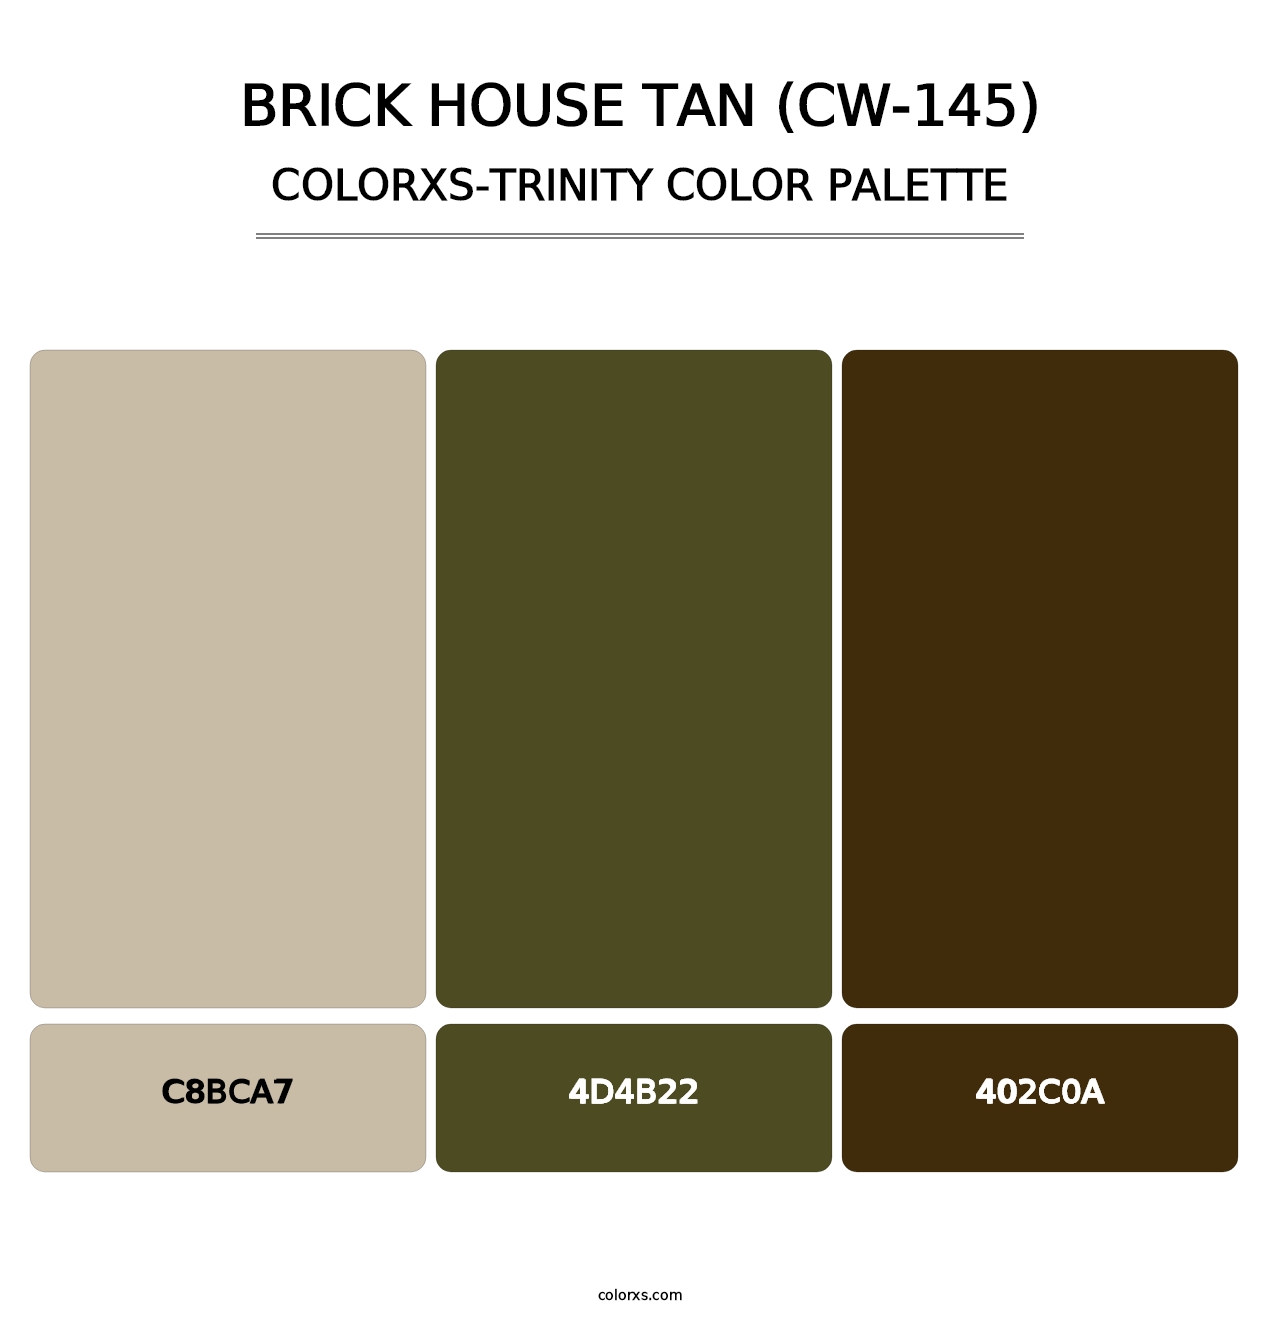 Brick House Tan (CW-145) - Colorxs Trinity Palette